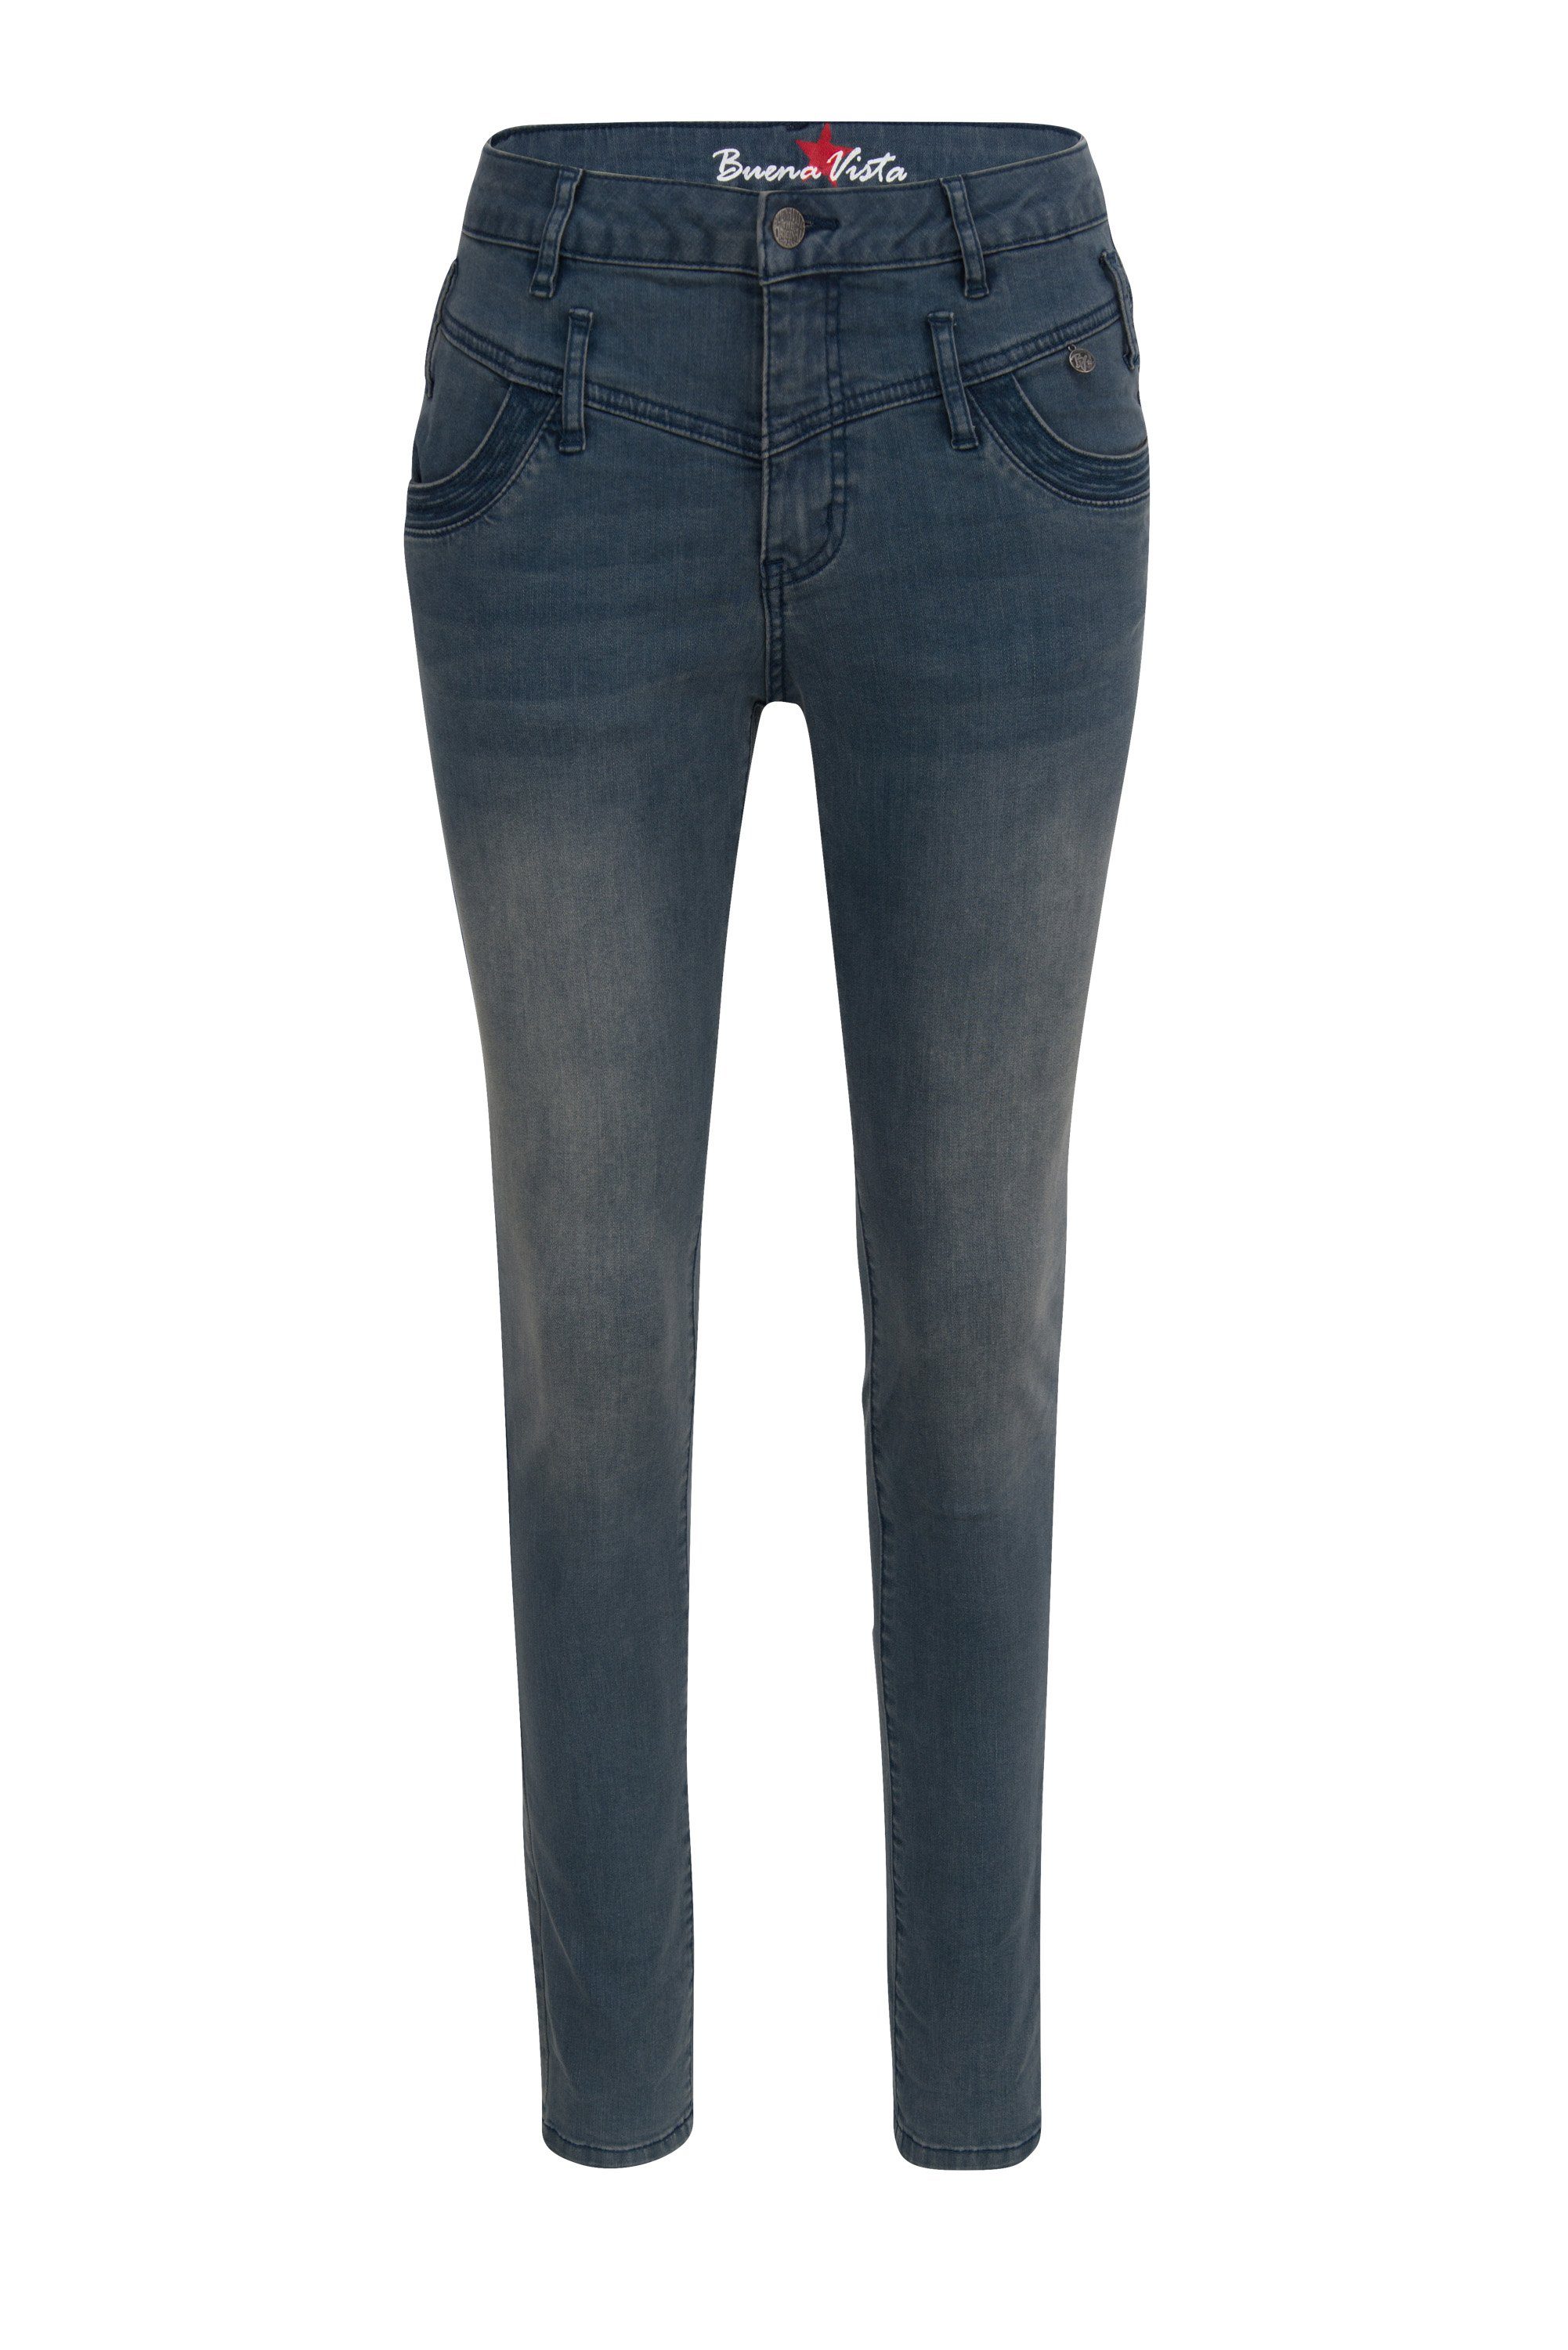 Buena Vista Damen Jeans online kaufen | OTTO